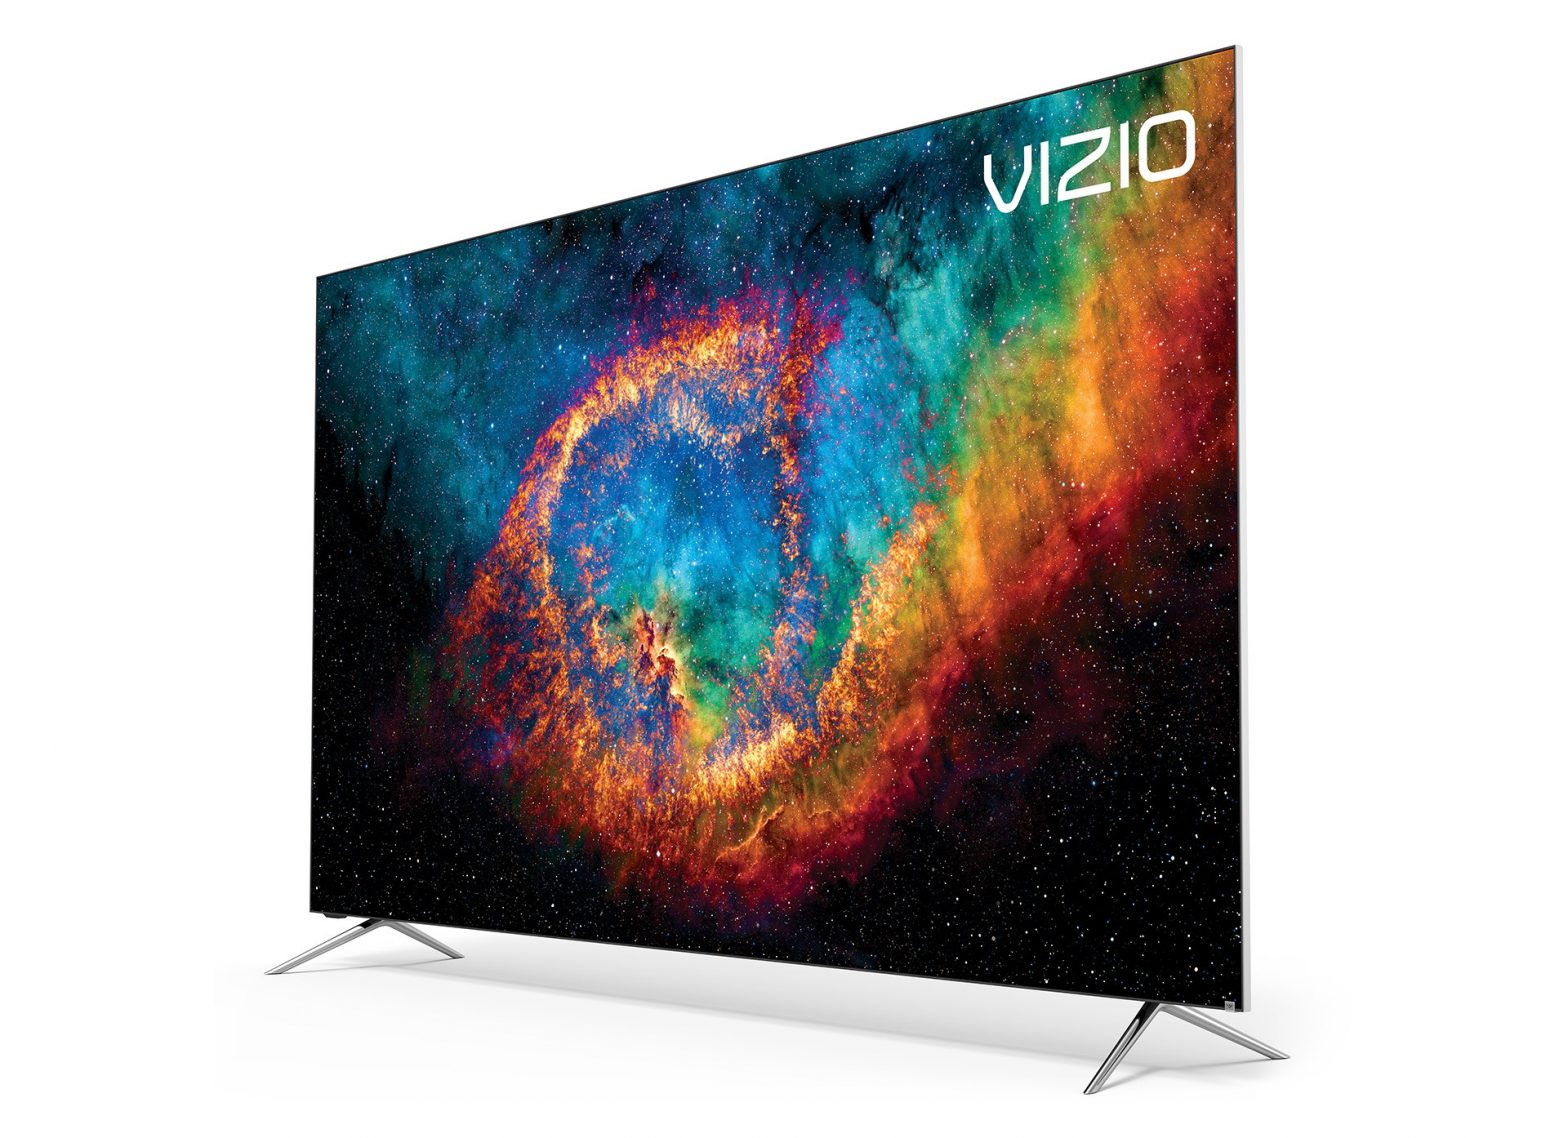 Vizio 2019 P-Series Quantum Smart TV User Manual